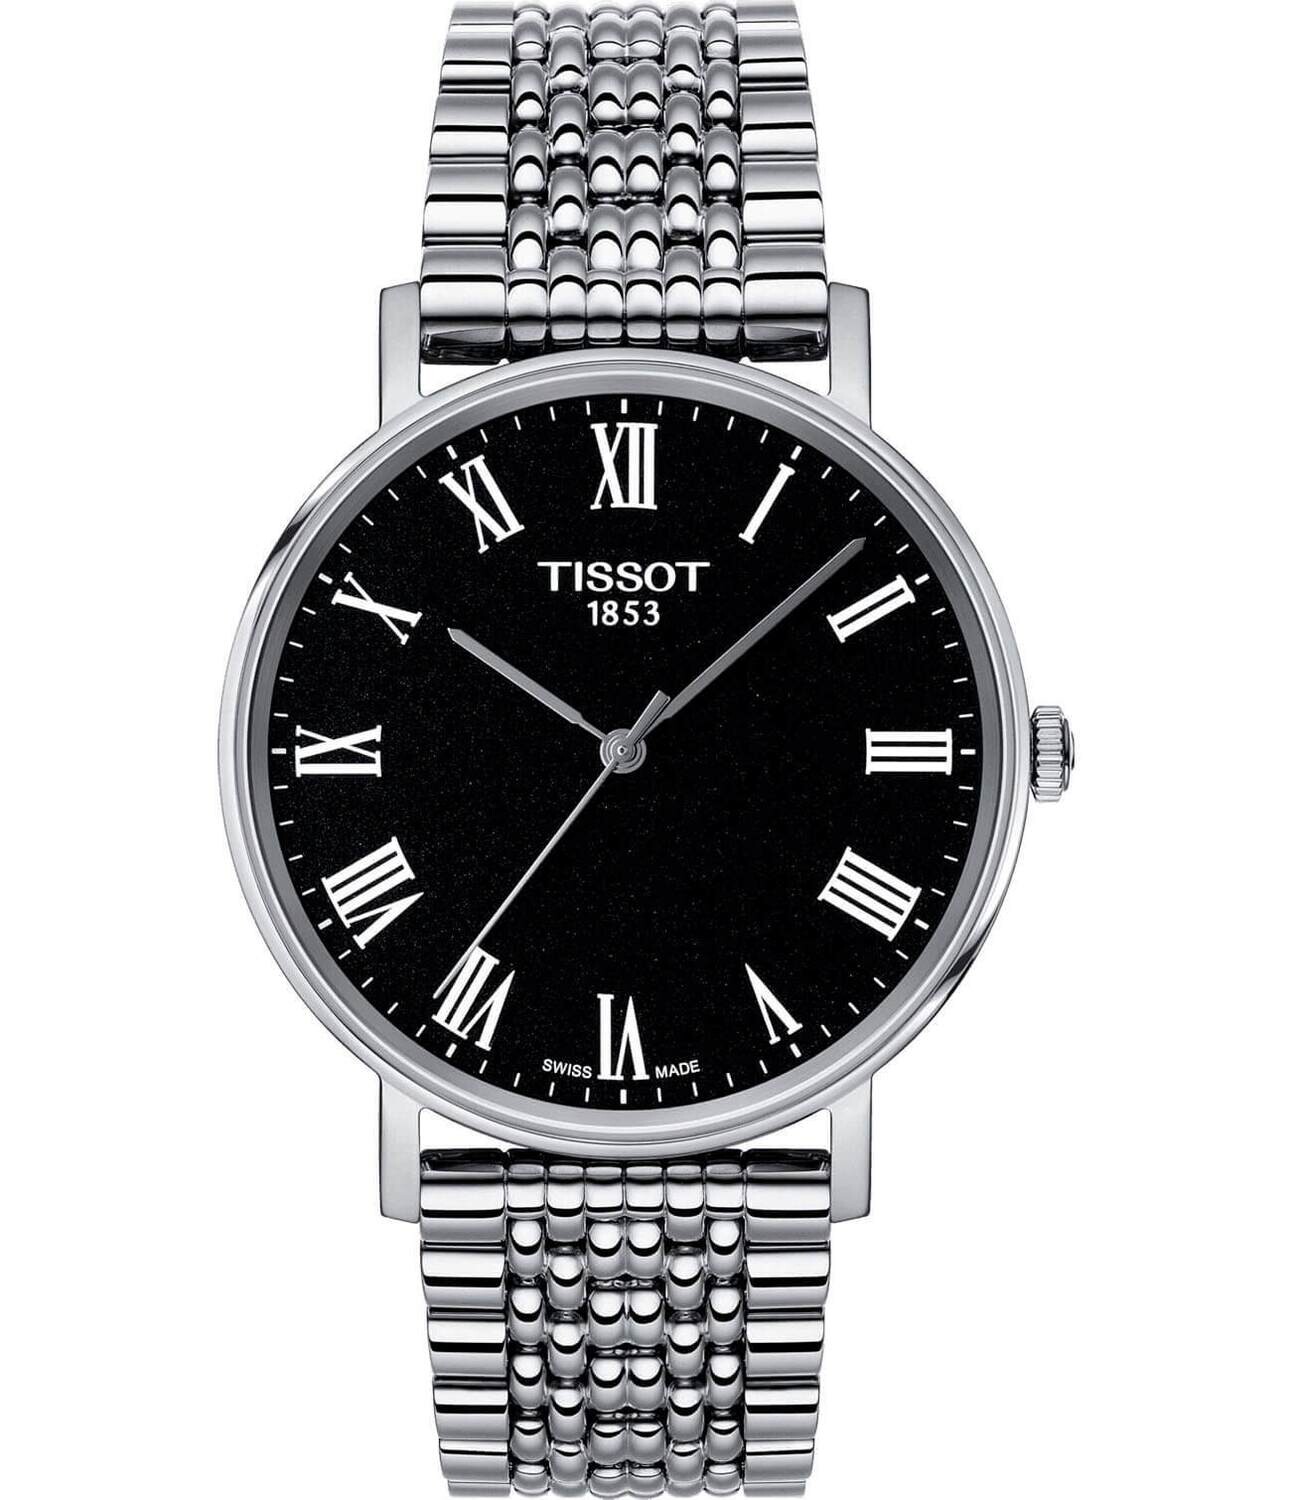 Наручные часы Tissot Everytime Medium T109.410.11.053.00